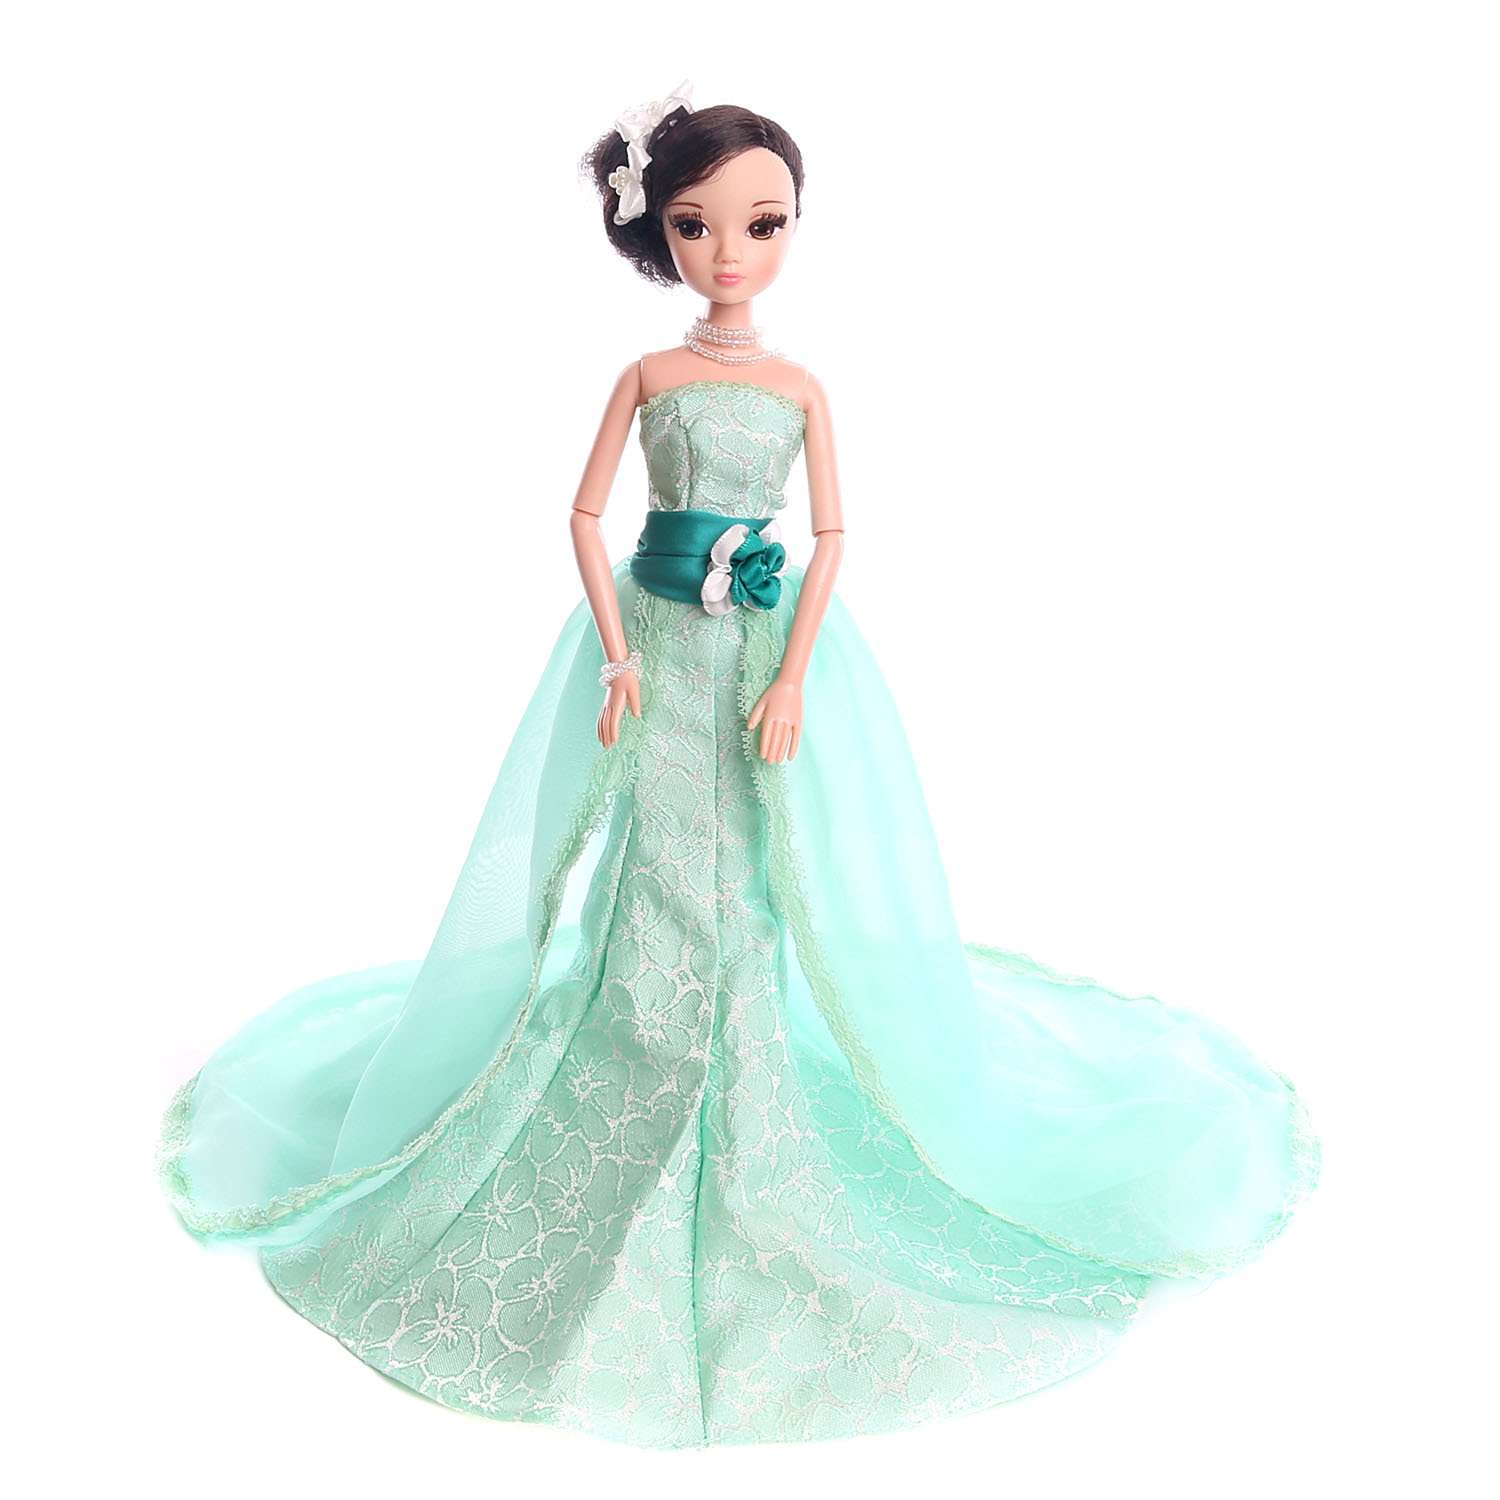 Кукла Sonya Rose платье Жасмин R4339N - фото 1